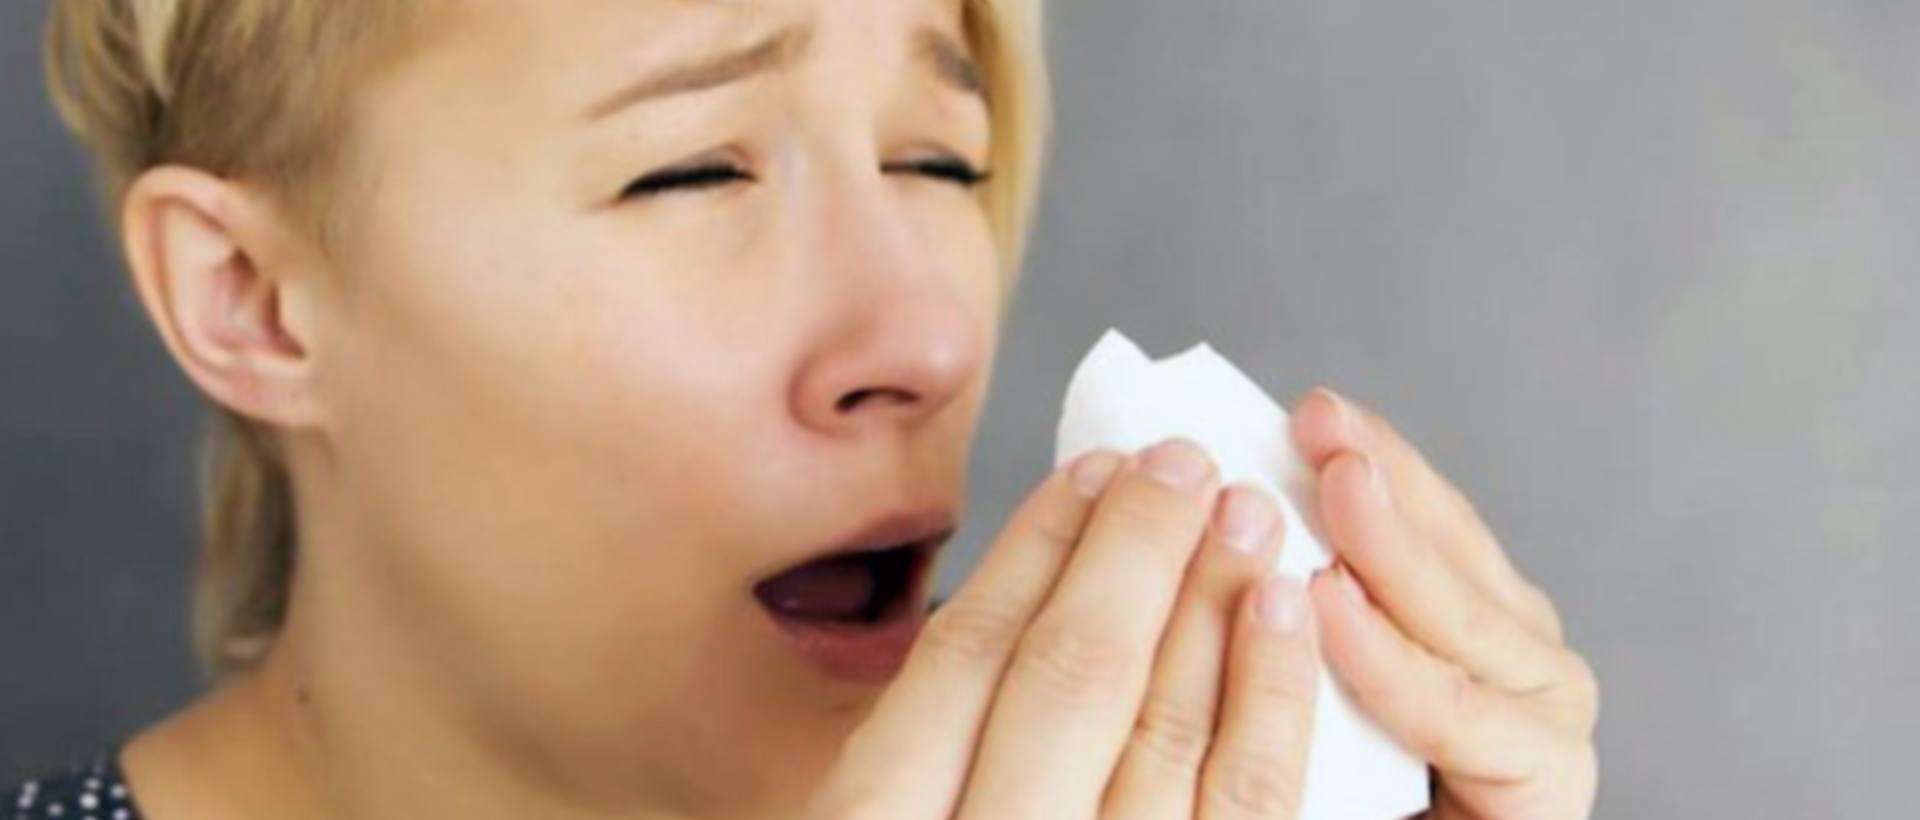 Allergies-Comment-traiter-ces-reactions-psychosomatiques-.jpg